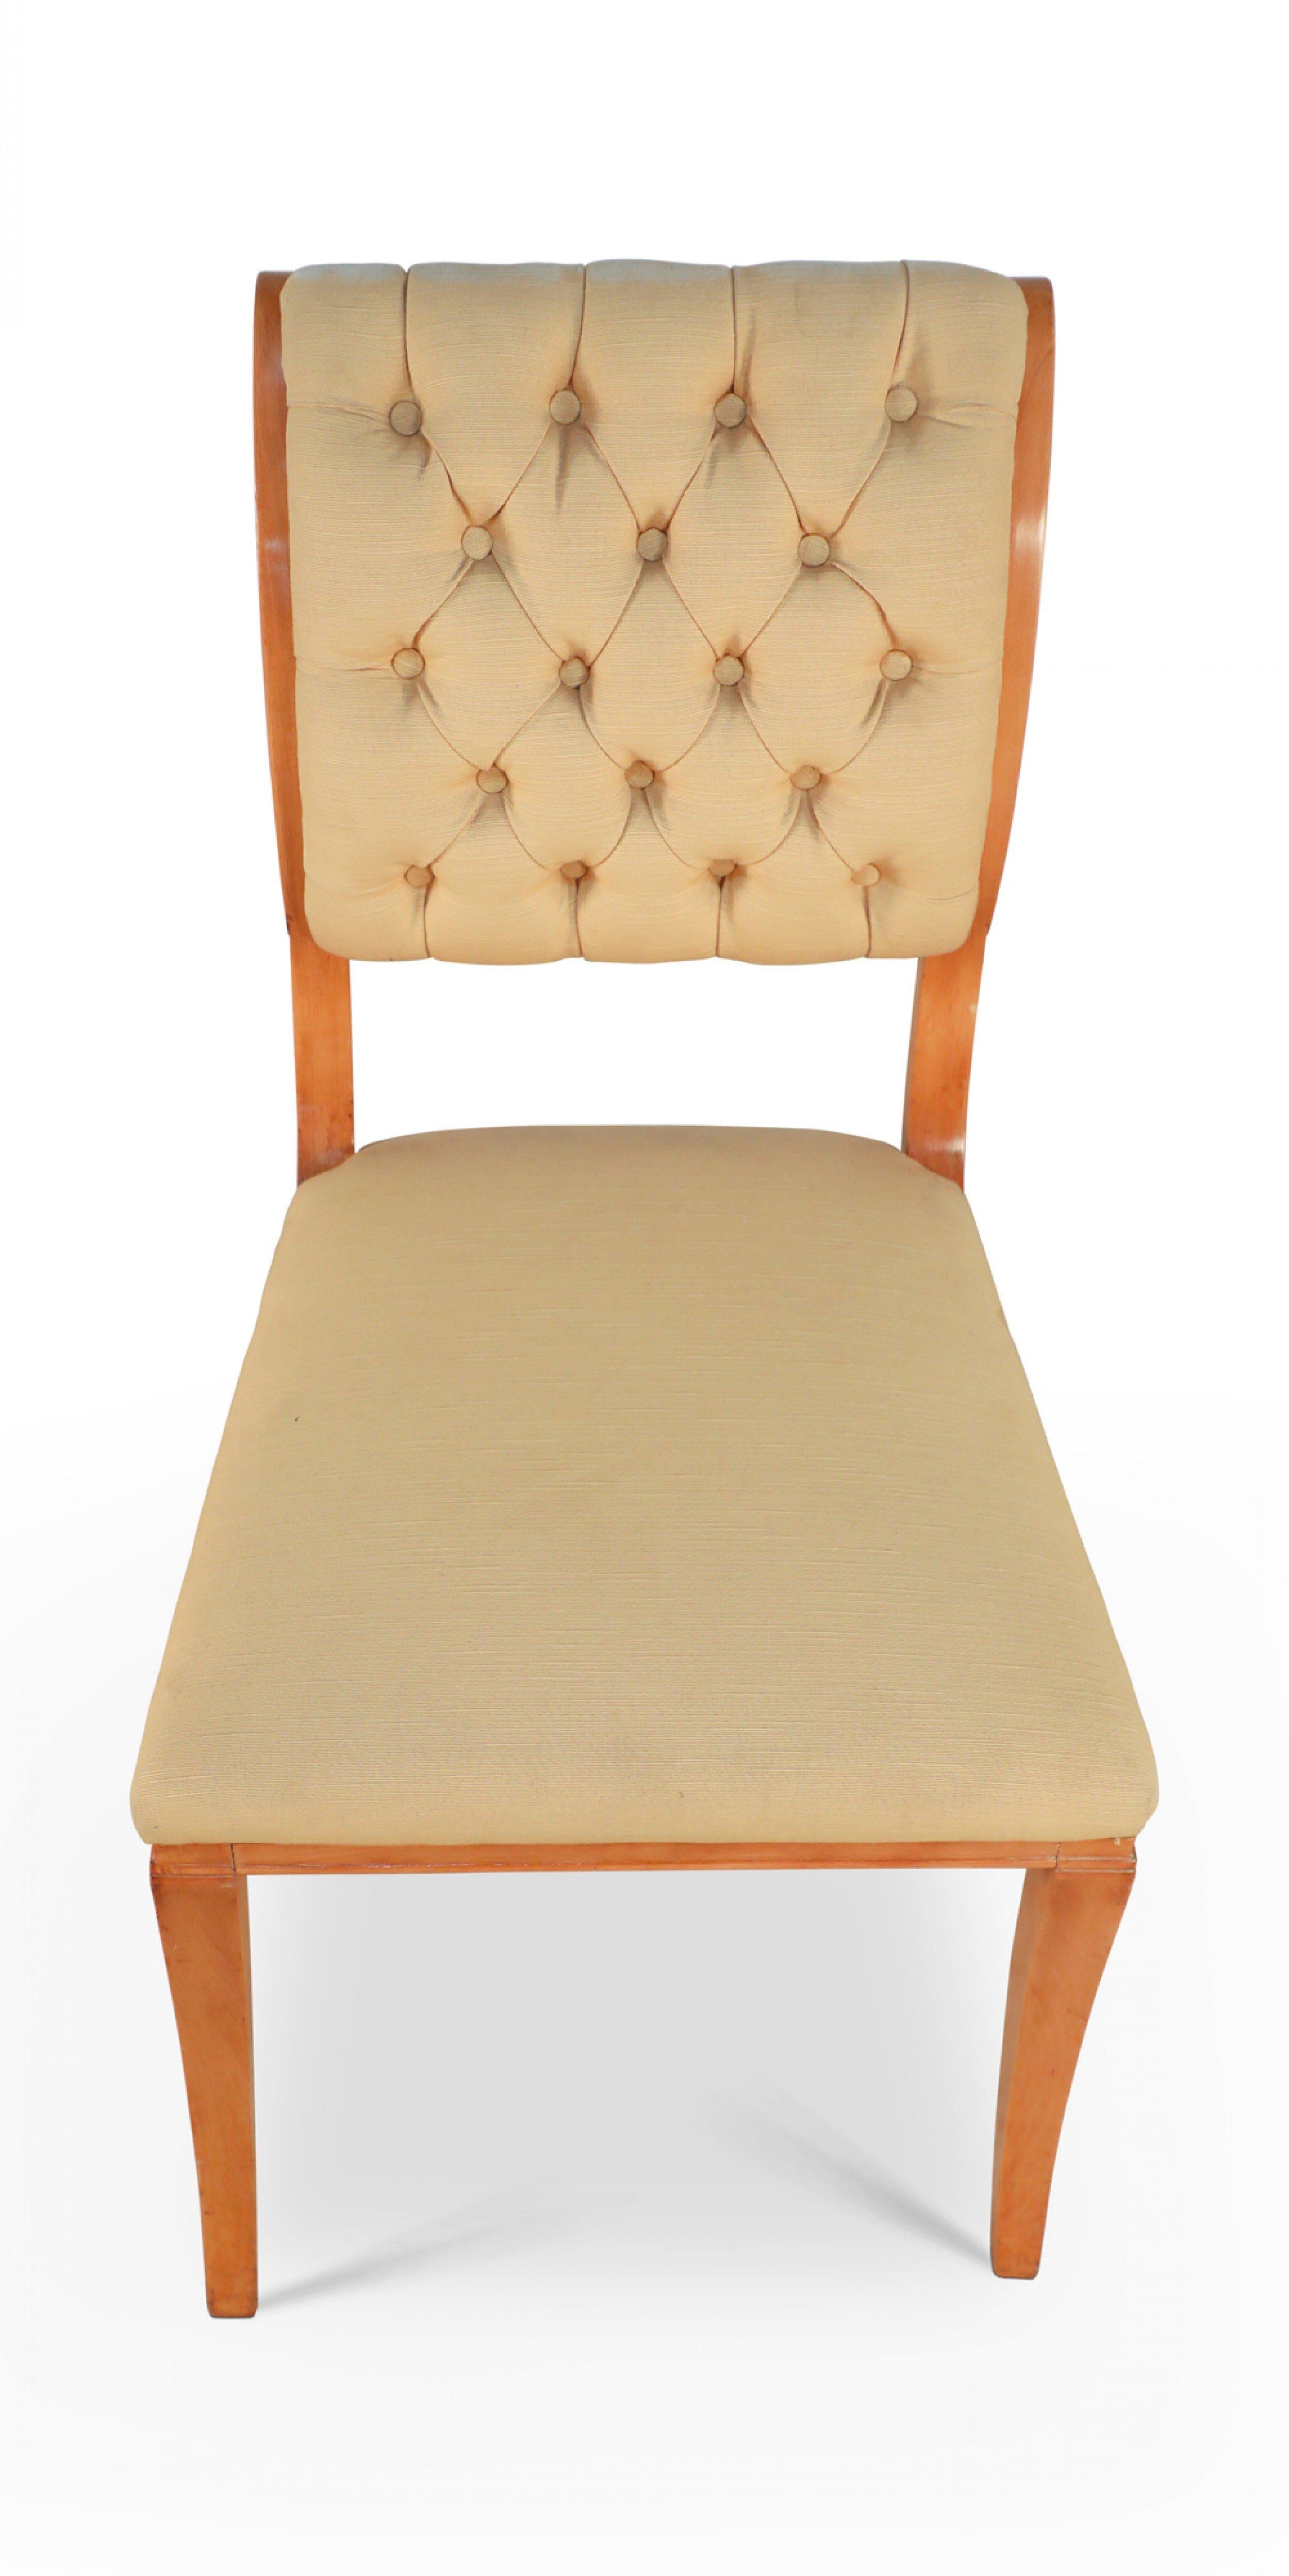 6 Stühle aus französischem Bergahorn der 1940er Jahre mit geschwungener Rückenlehne, gepolstert mit getufteter beiger Seide, auf Säbelbeinen. (ANDRE ARBUS zugeschrieben).